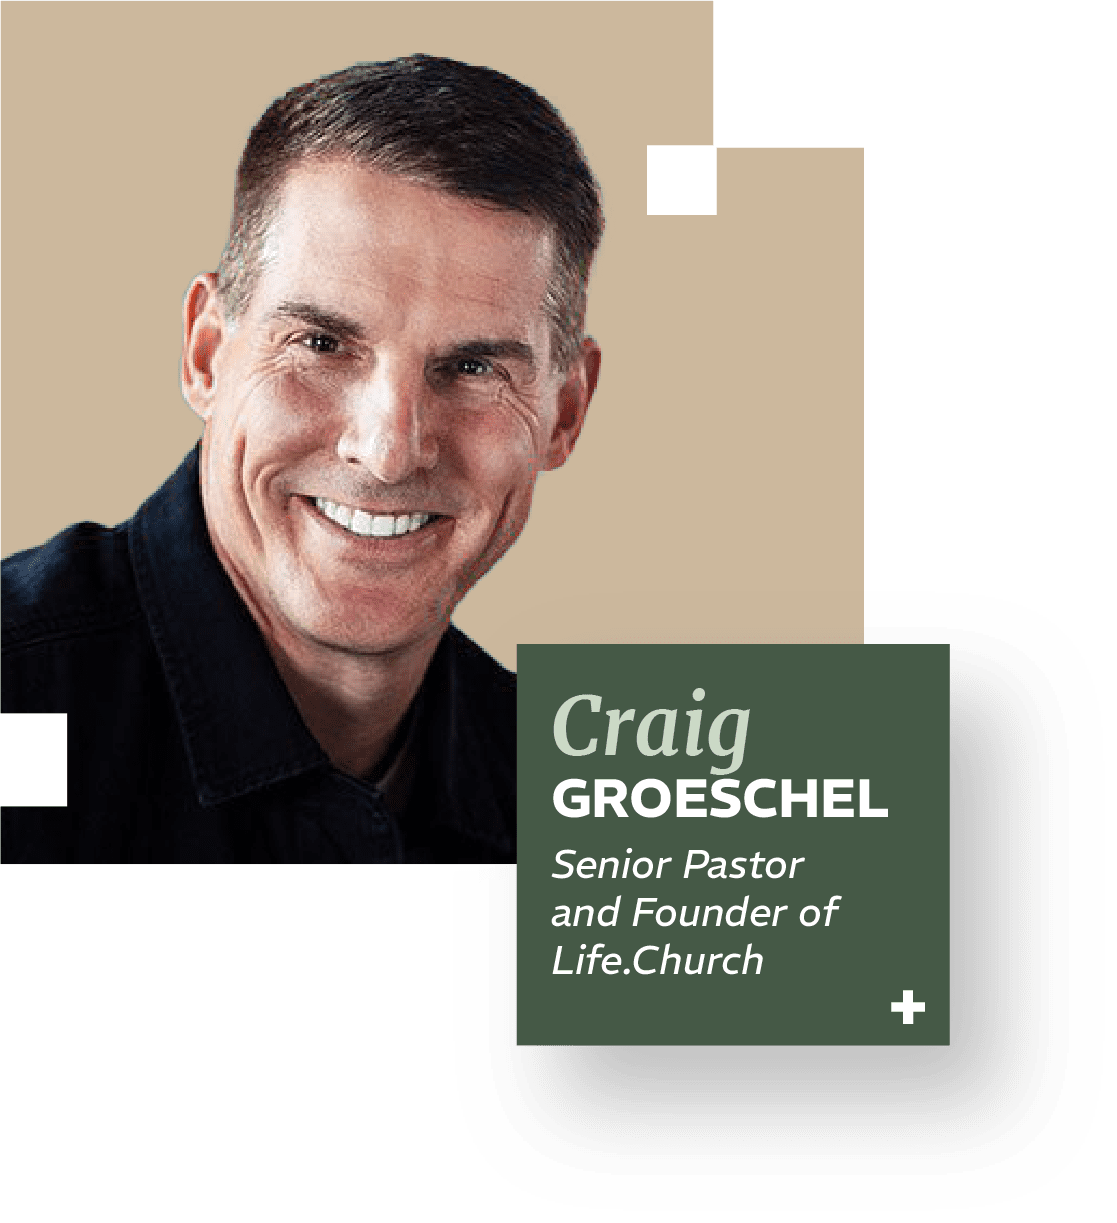 Craig Groeschel